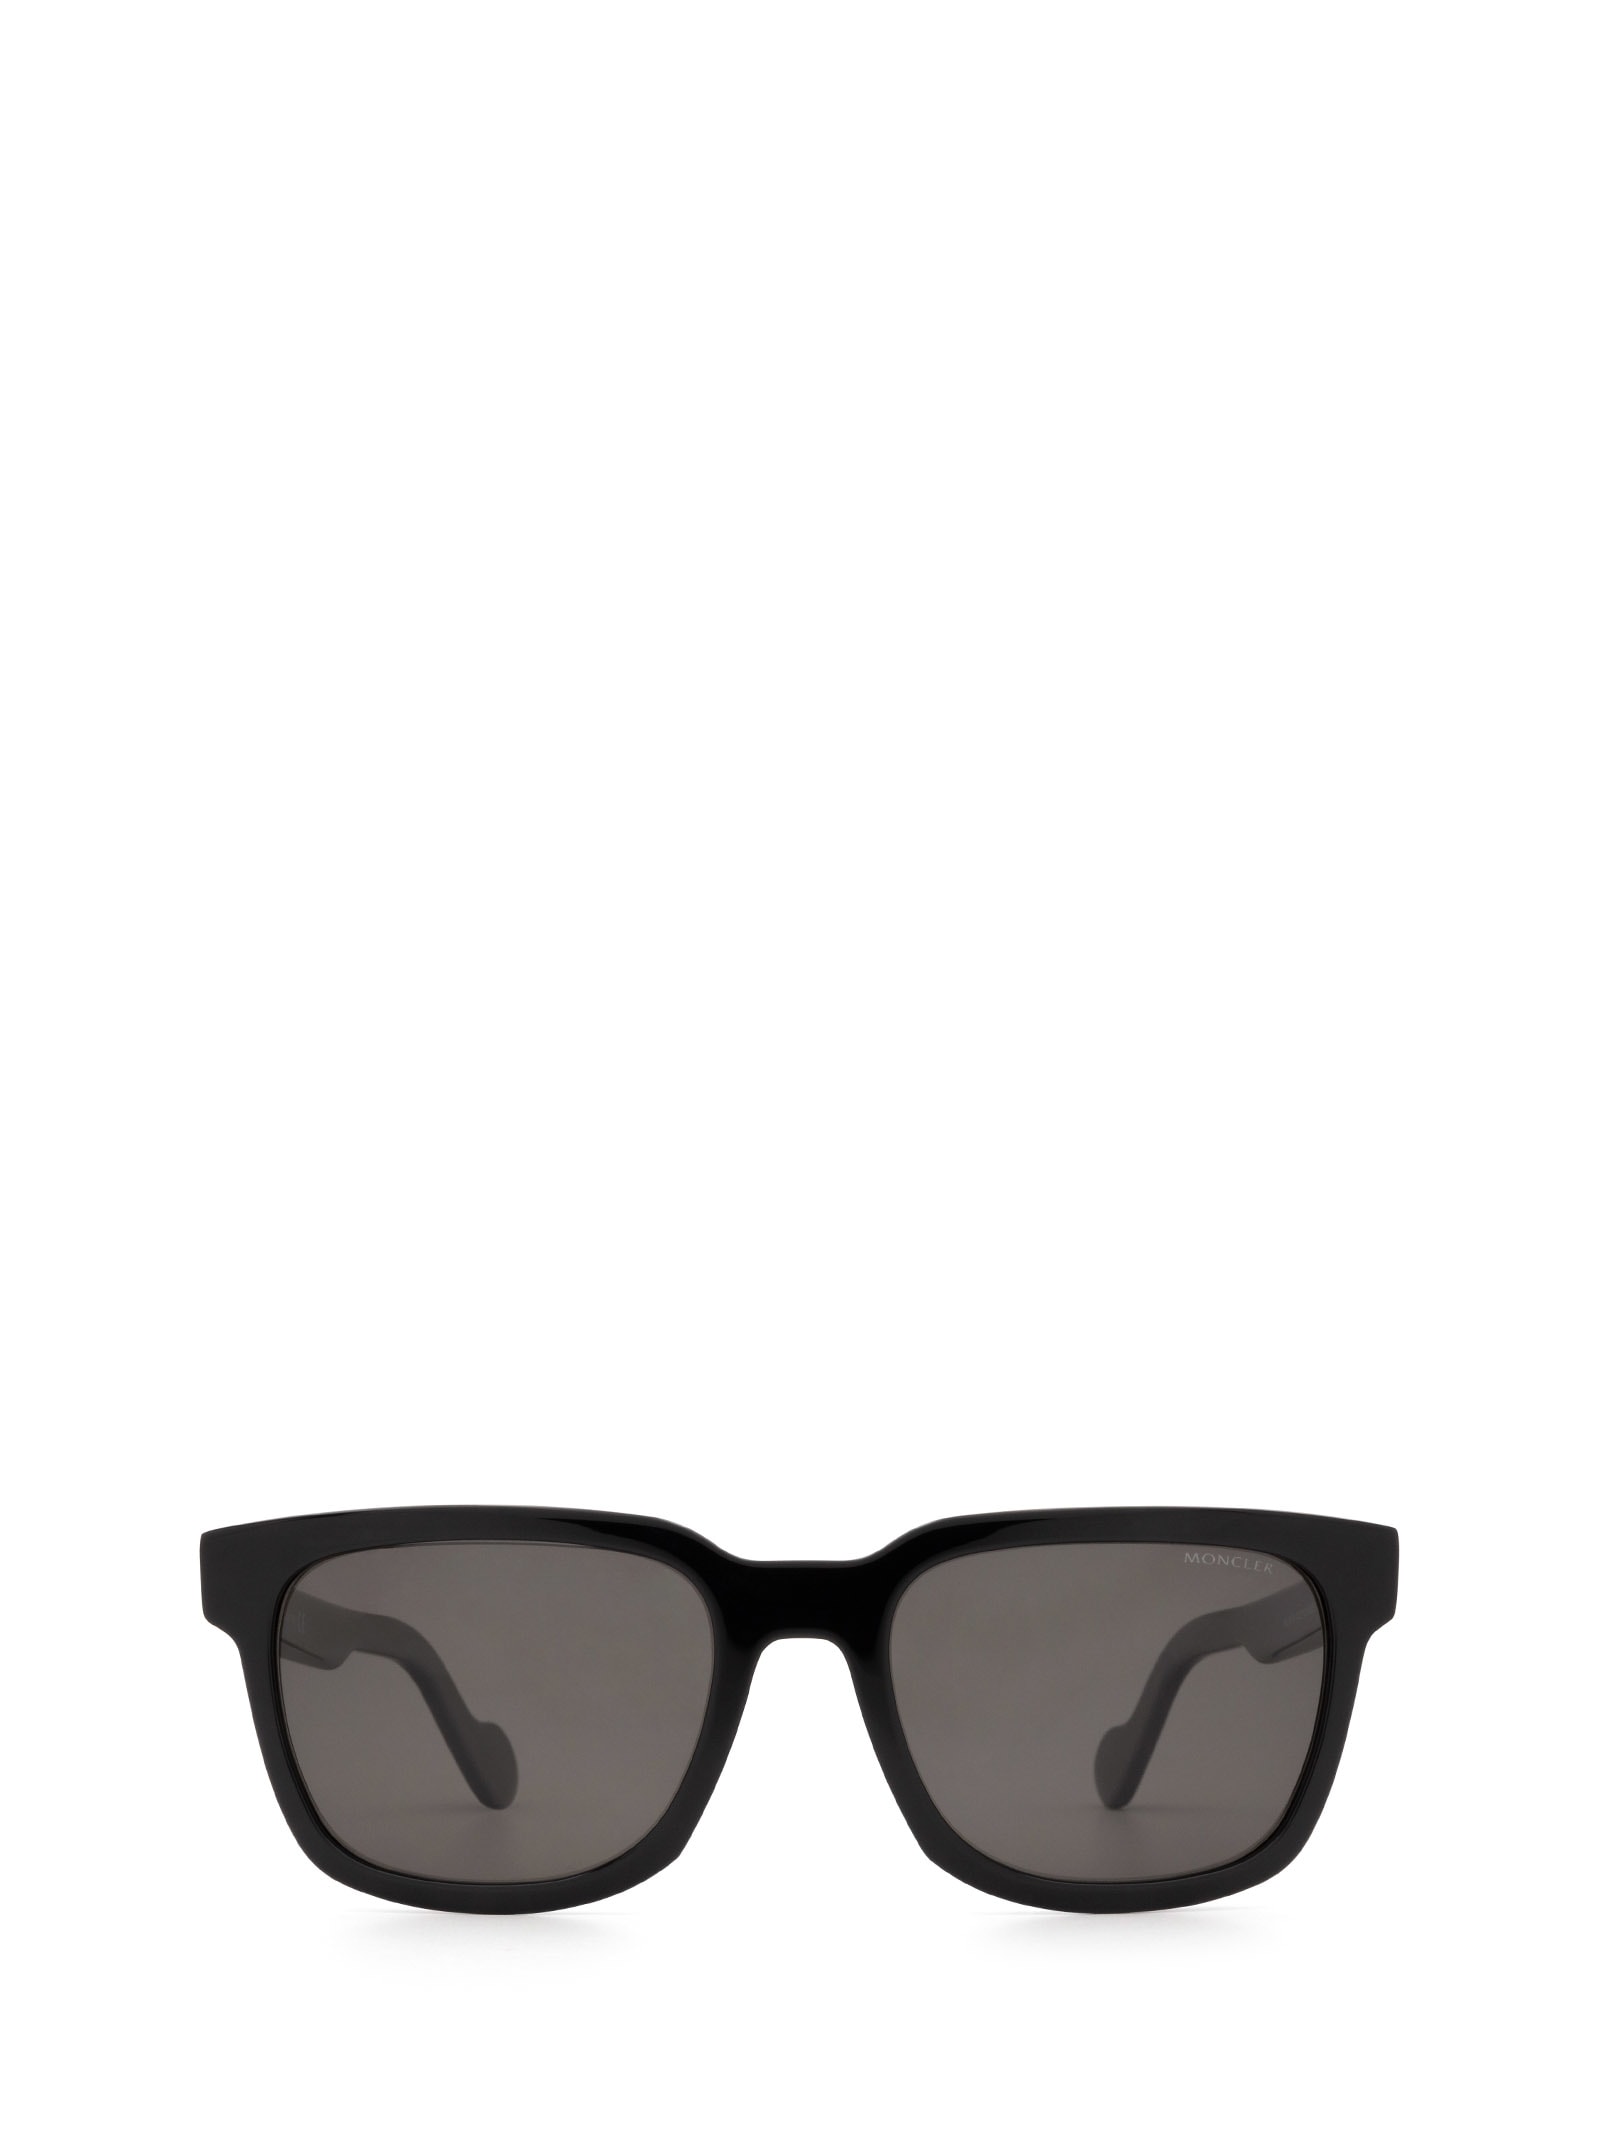 Moncler Eyewear Moncler Ml0174 Black Sunglasses